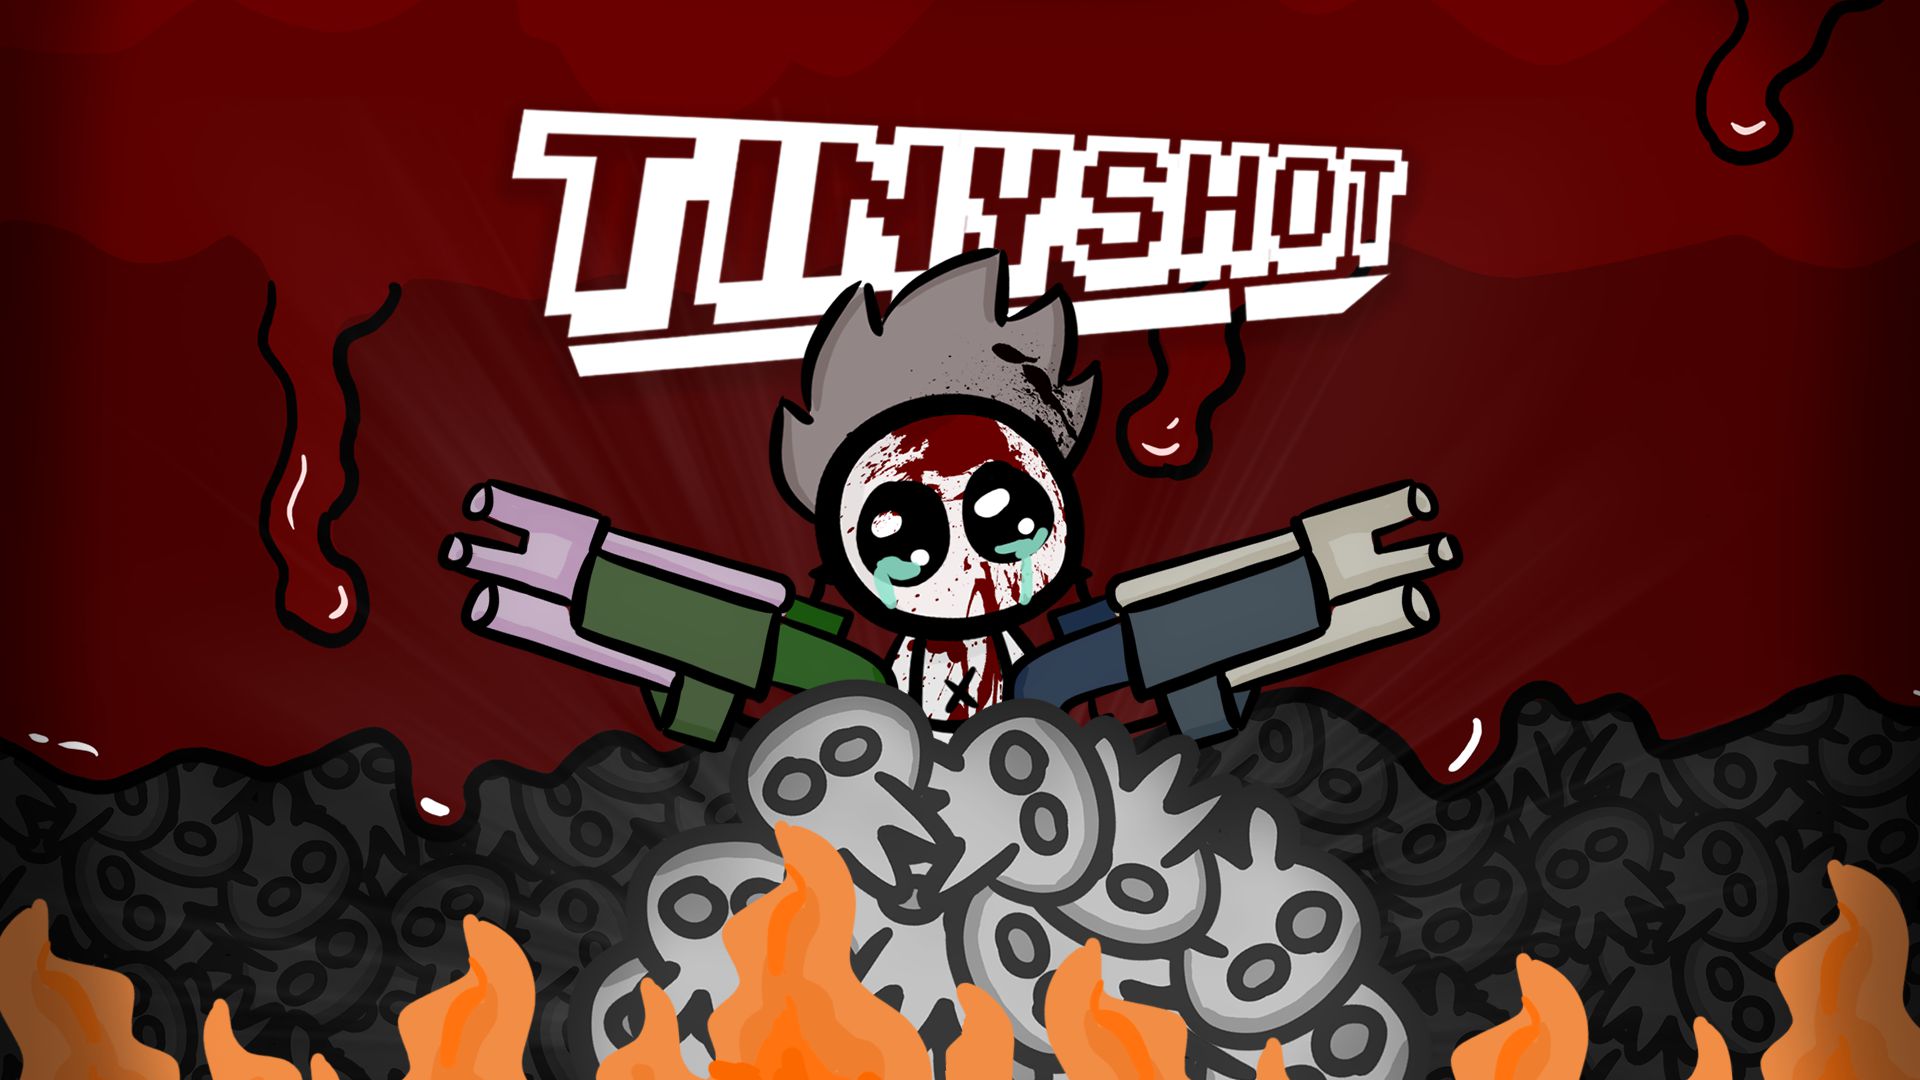 TinyShot Principal